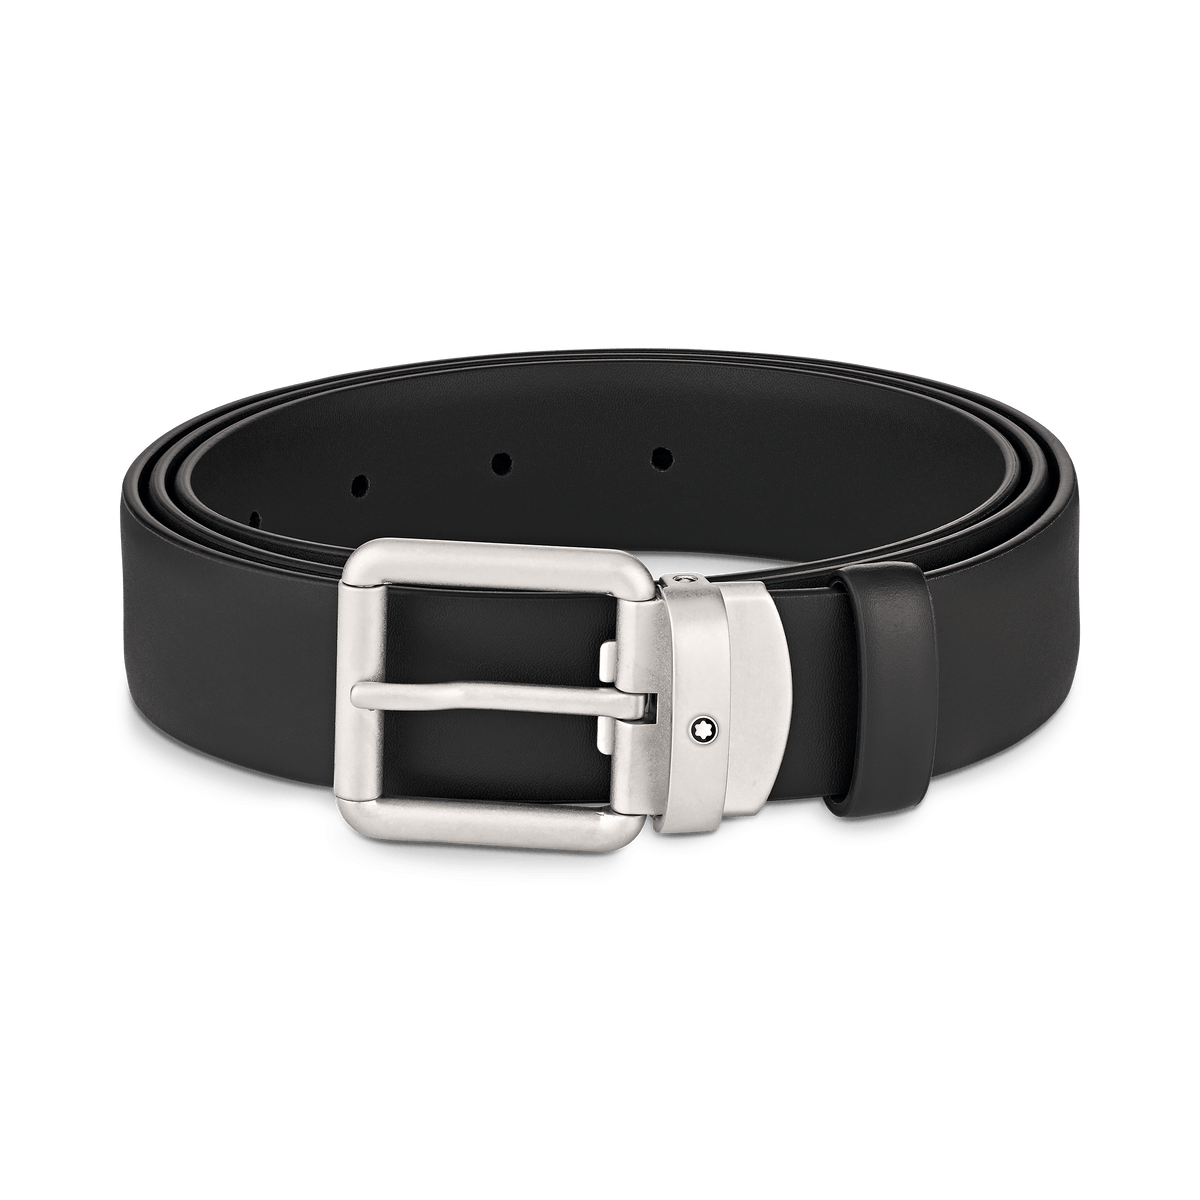 Black 30 mm leather belt